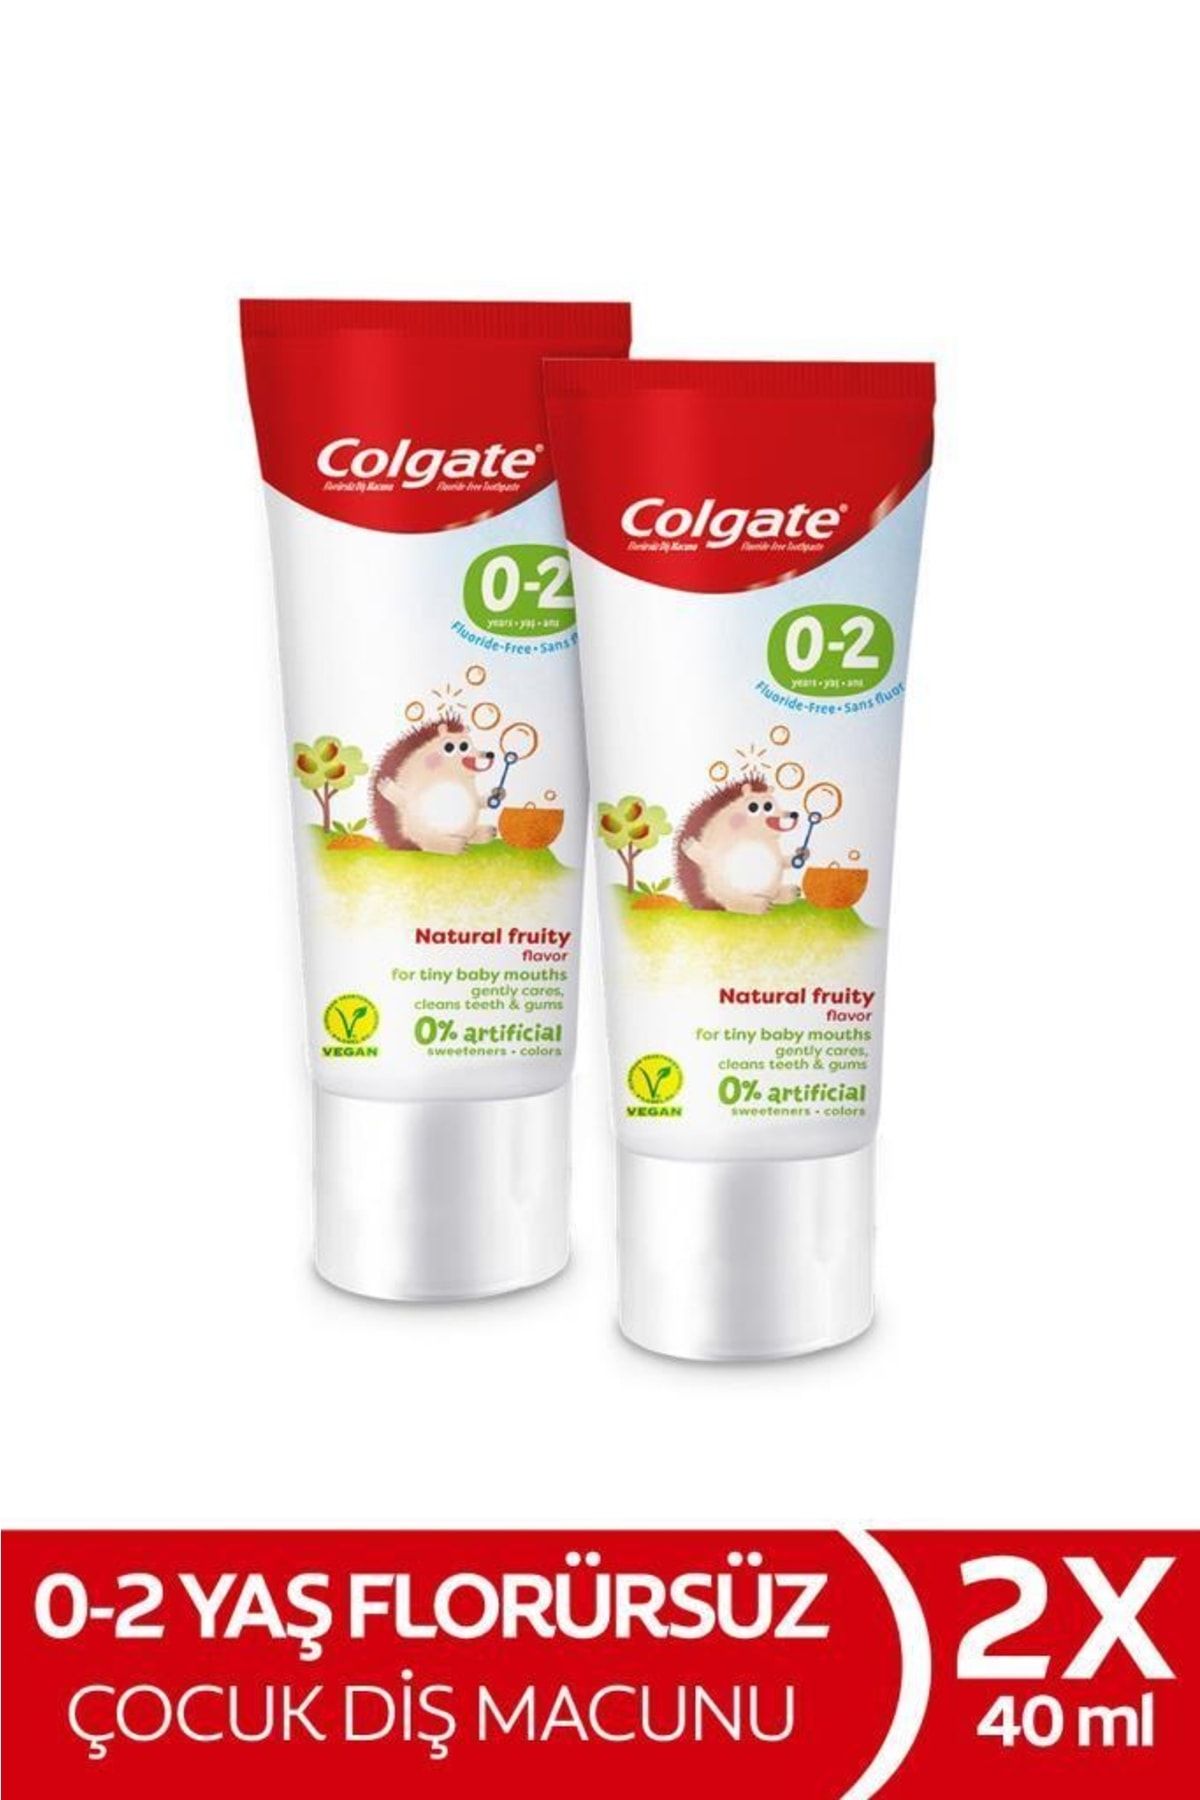 Colgate 0-2 Yaş Doğal Meyve Tadında Florürsüz Çocuk Diş Macunu 40 ml X2 Adet